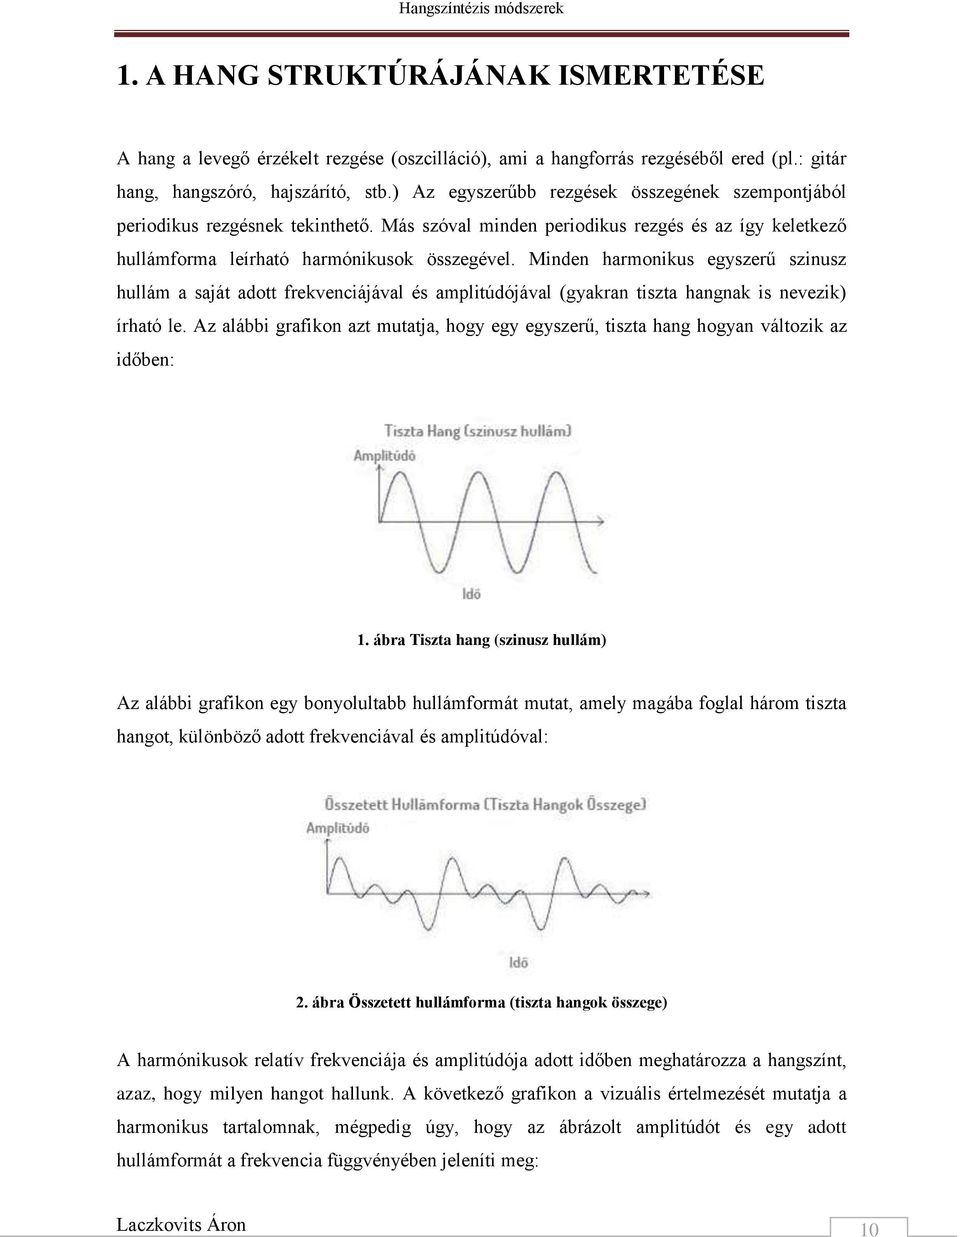 Minden harmonikus egyszerű szinusz hullám a saját adott frekvenciájával és amplitúdójával (gyakran tiszta hangnak is nevezik) írható le.